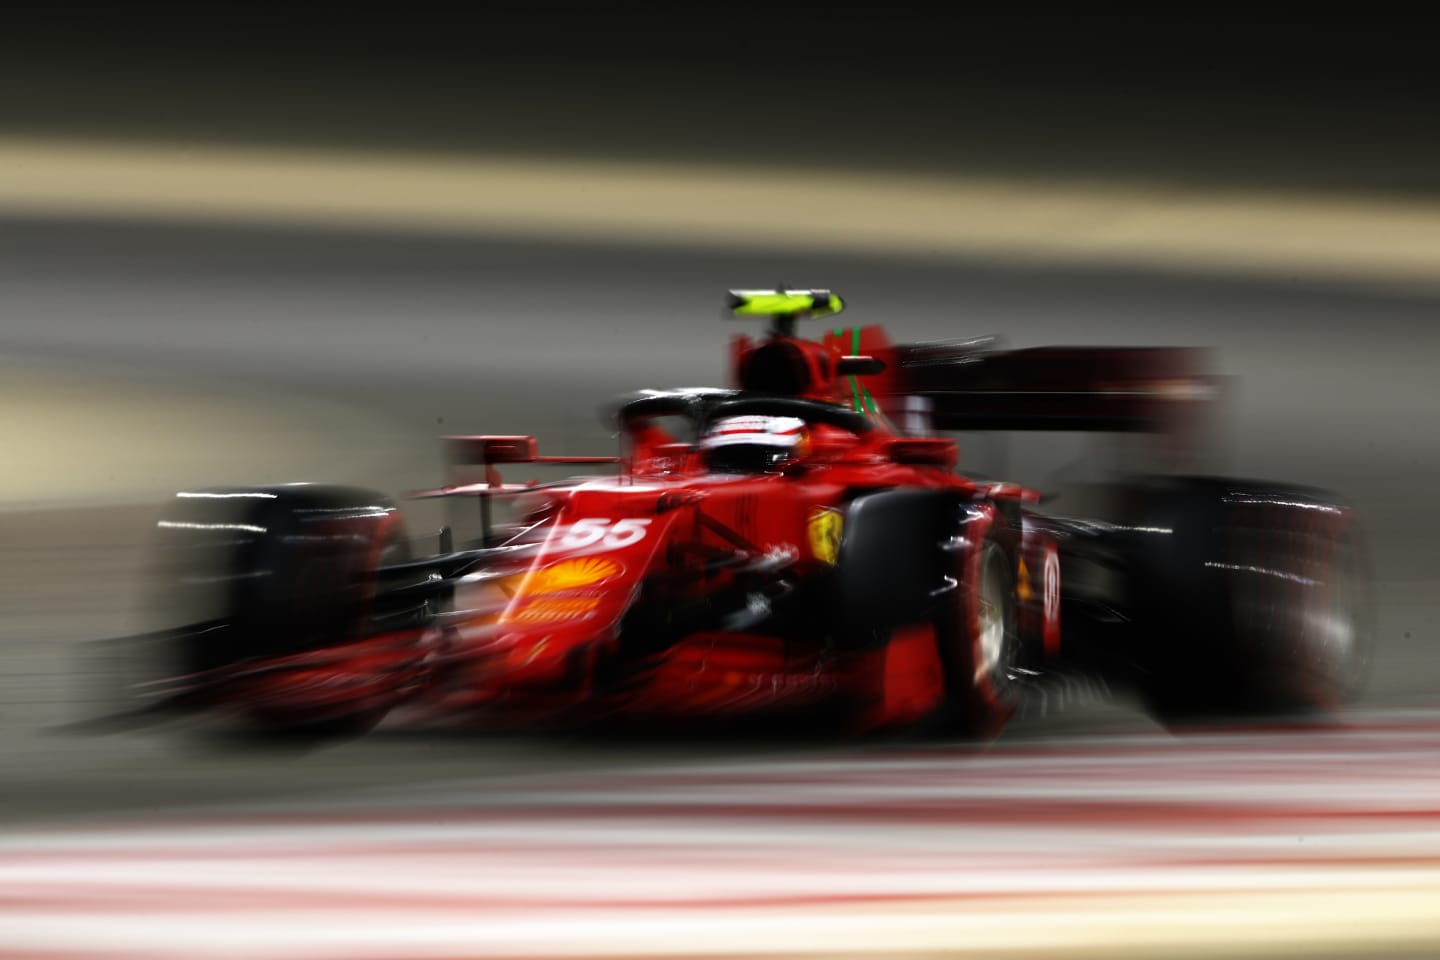 BAHRAIN, BAHRAIN - MARCH 14: Carlos Sainz of Spain driving the (55) Scuderia Ferrari SF21 on track